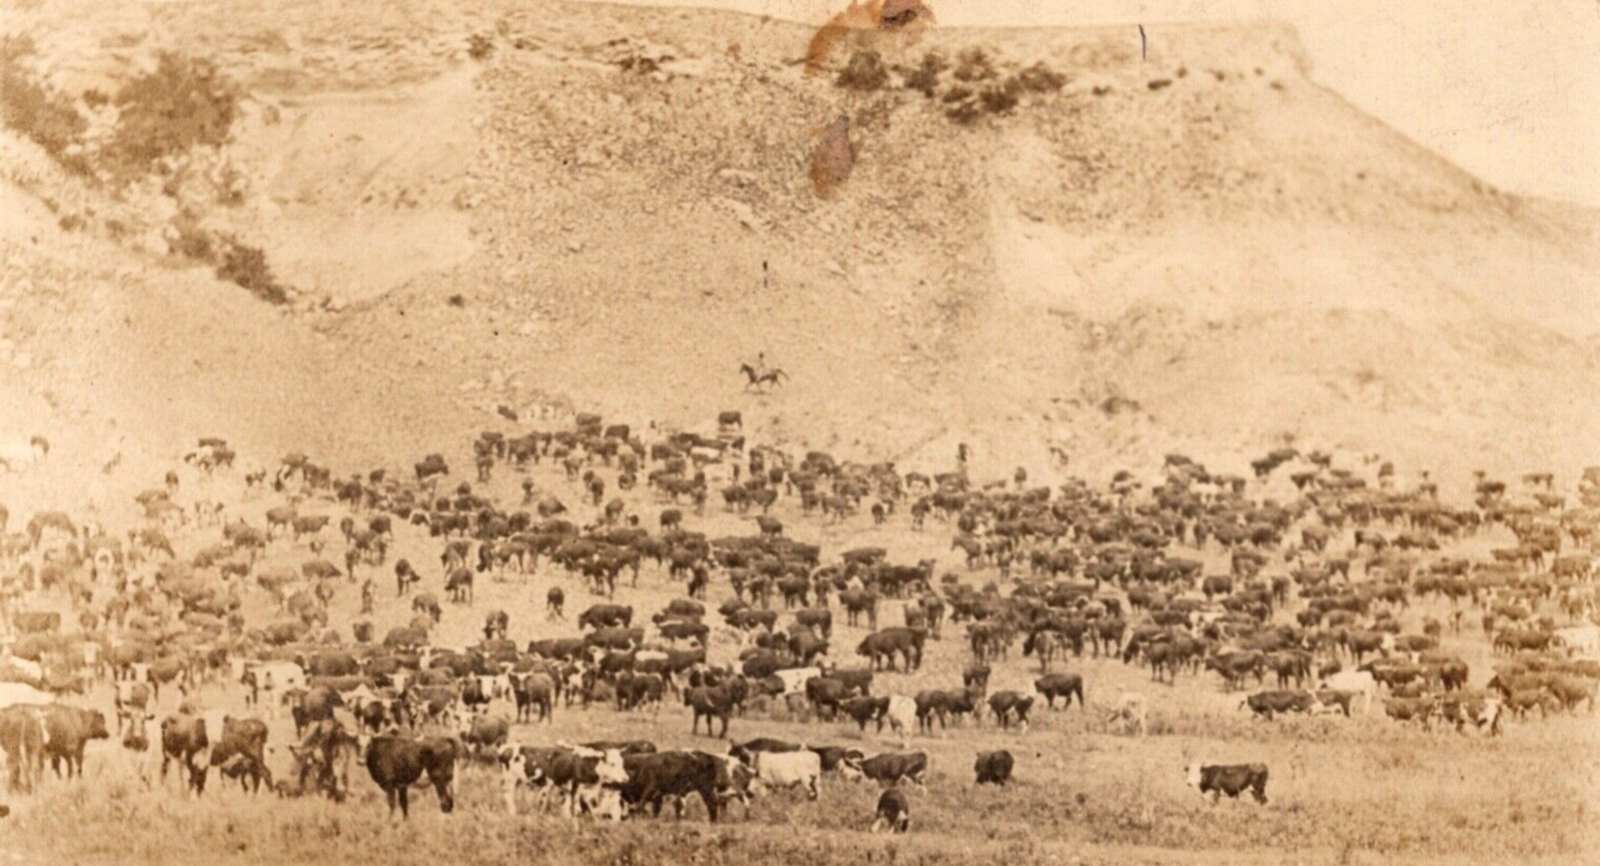 Herd of Cattle near Quitaque Texas in 1912